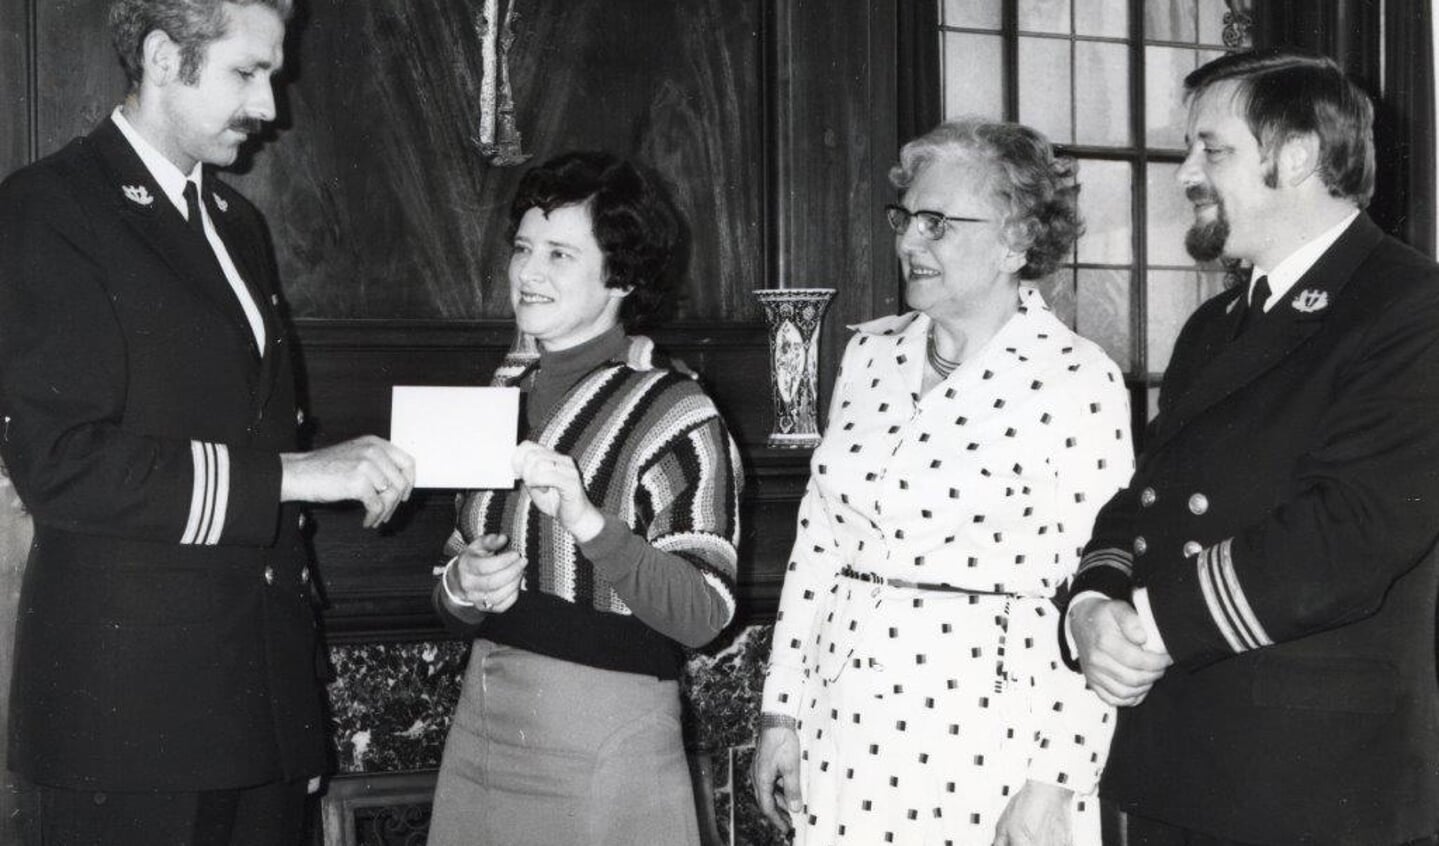 Vlootaalmoezenier Jan Bandsma (rechts) met vlootpredikant ds. Fre van den Bom verblijden mevrouw Aggenbach van de Zonnebloem met een cheque van 1500 gulden - in februari 1976